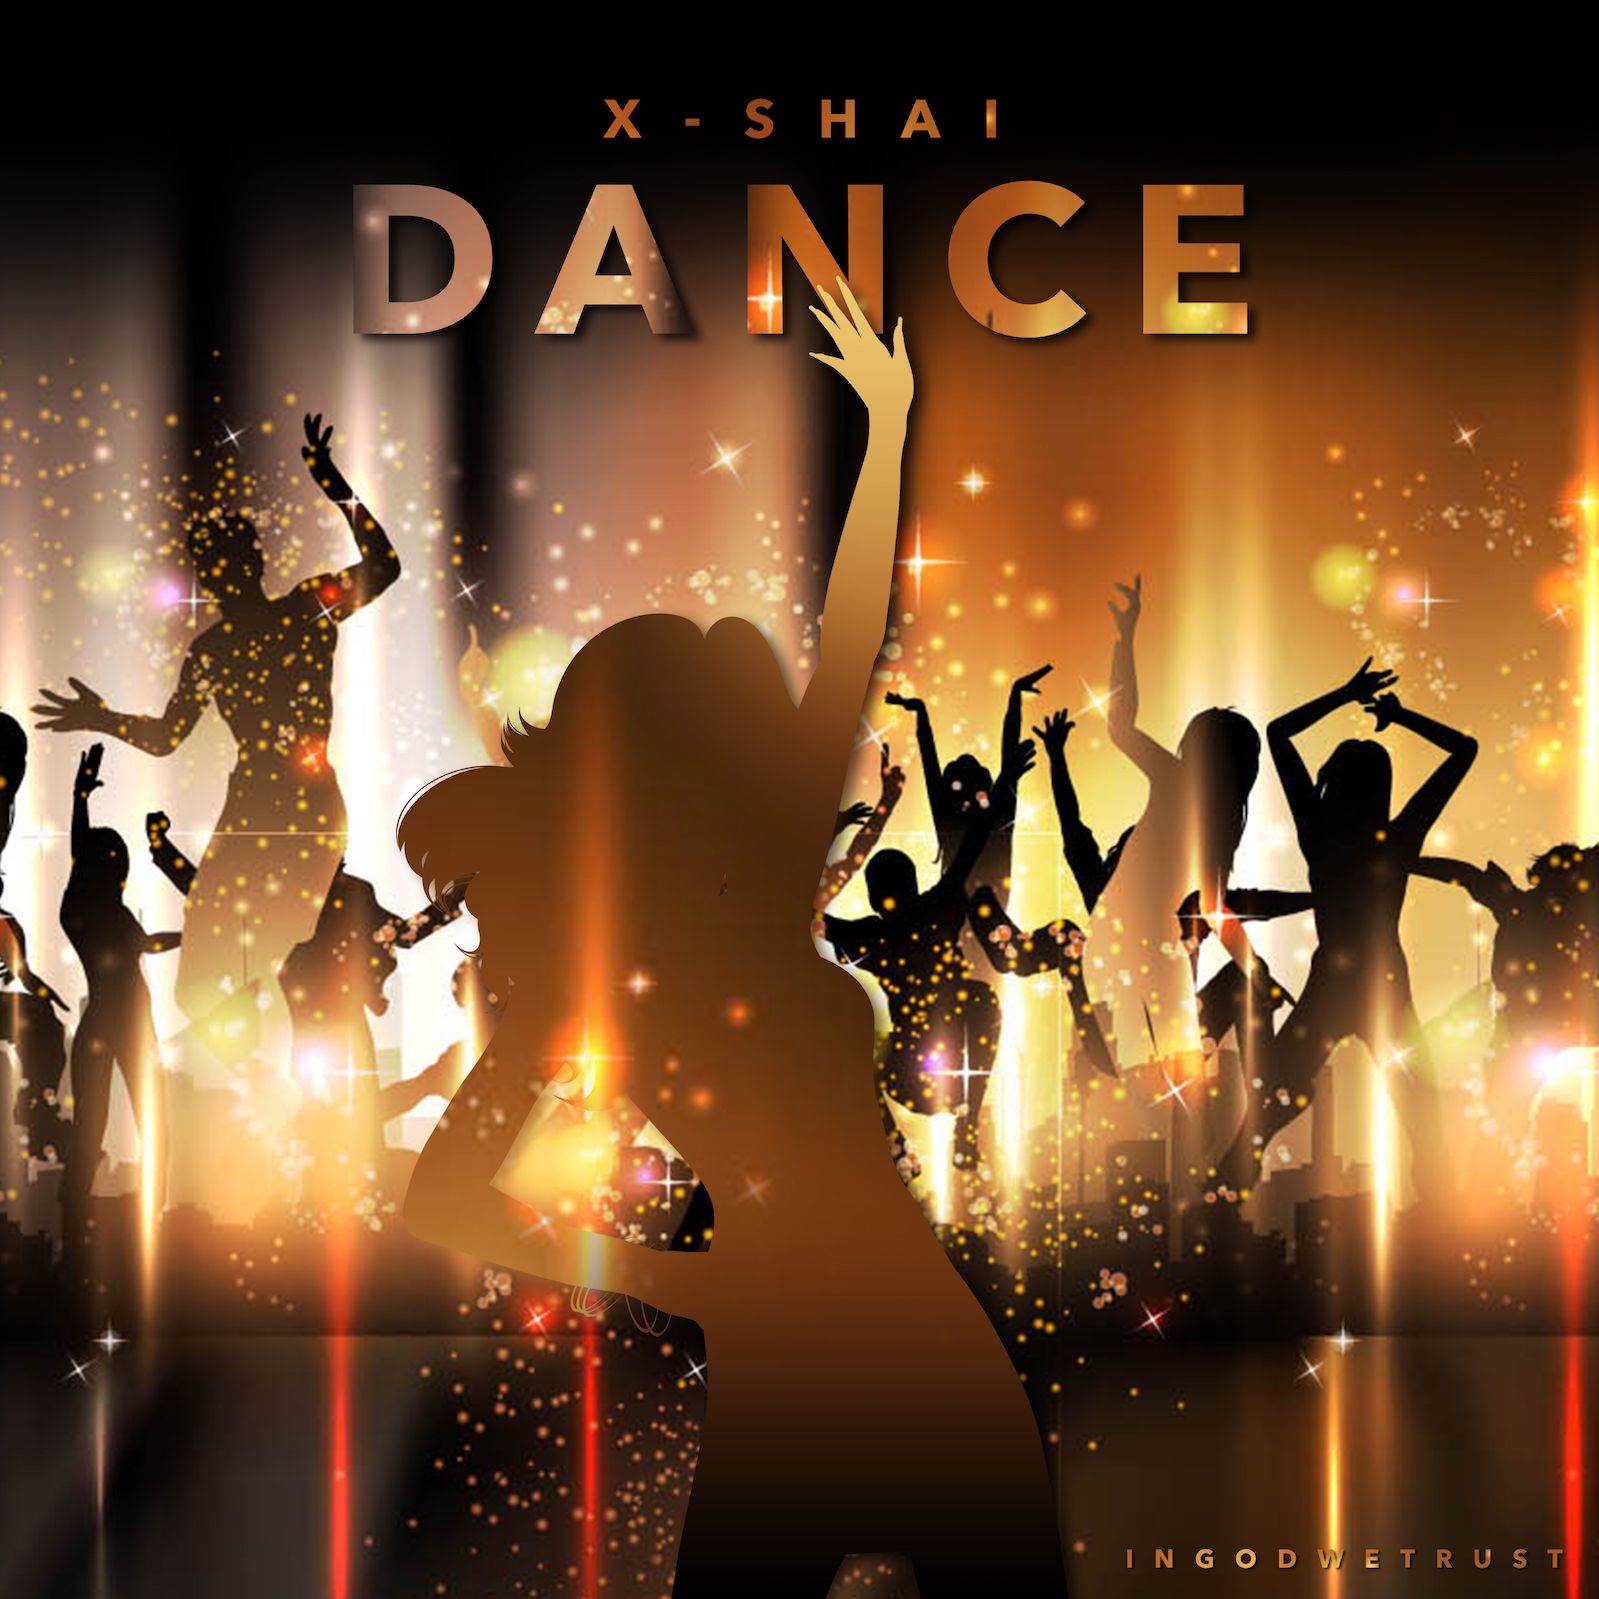 Танцевальные песни альбом. Танцы обложка. Обложка танцевальной группы. Танцевальная музыка обложка. Обложка для танцевального альбома.